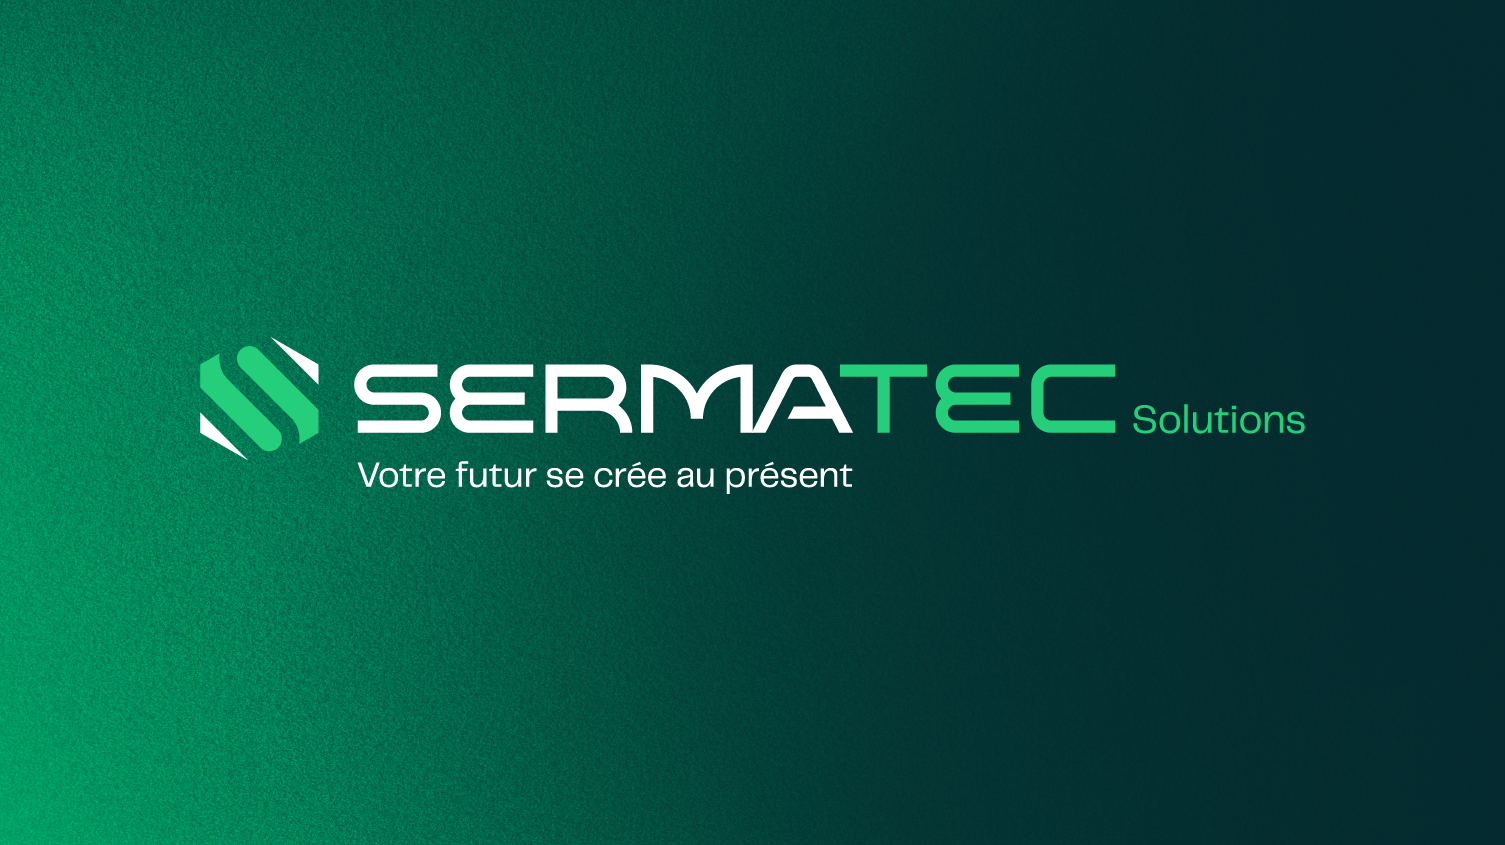 Sermatec-Identité-A